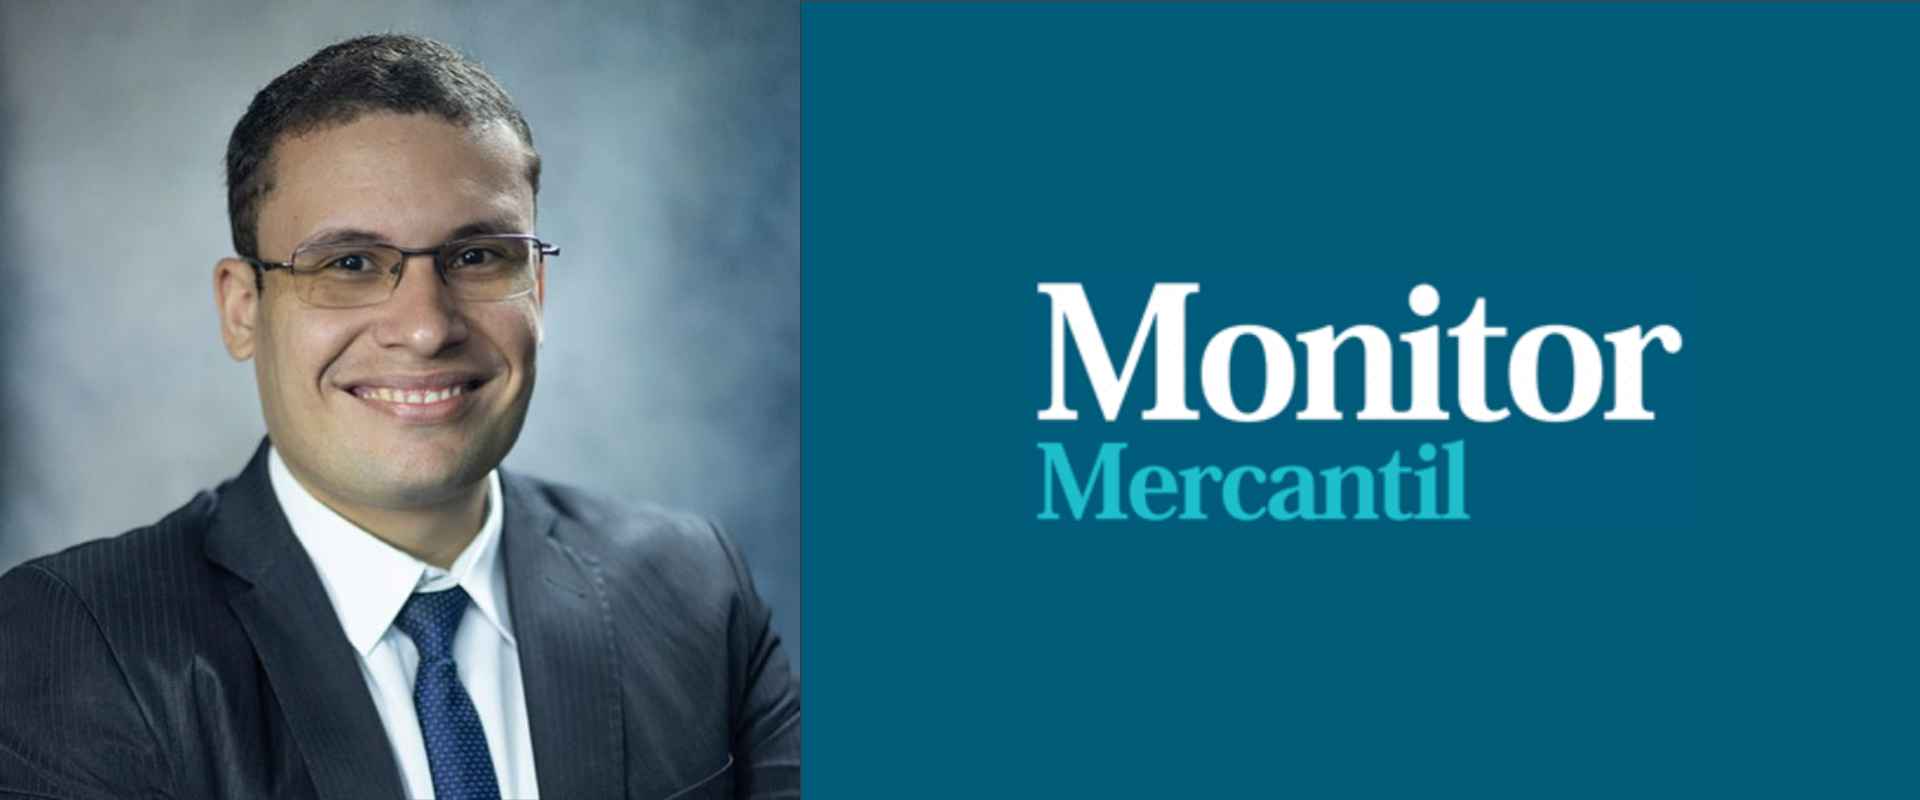 Em matéria do Monitor Mercantil, o professor Rodrigo Leite é citado como um dos colaboradores da pesquisado CMV sobre investimentos.